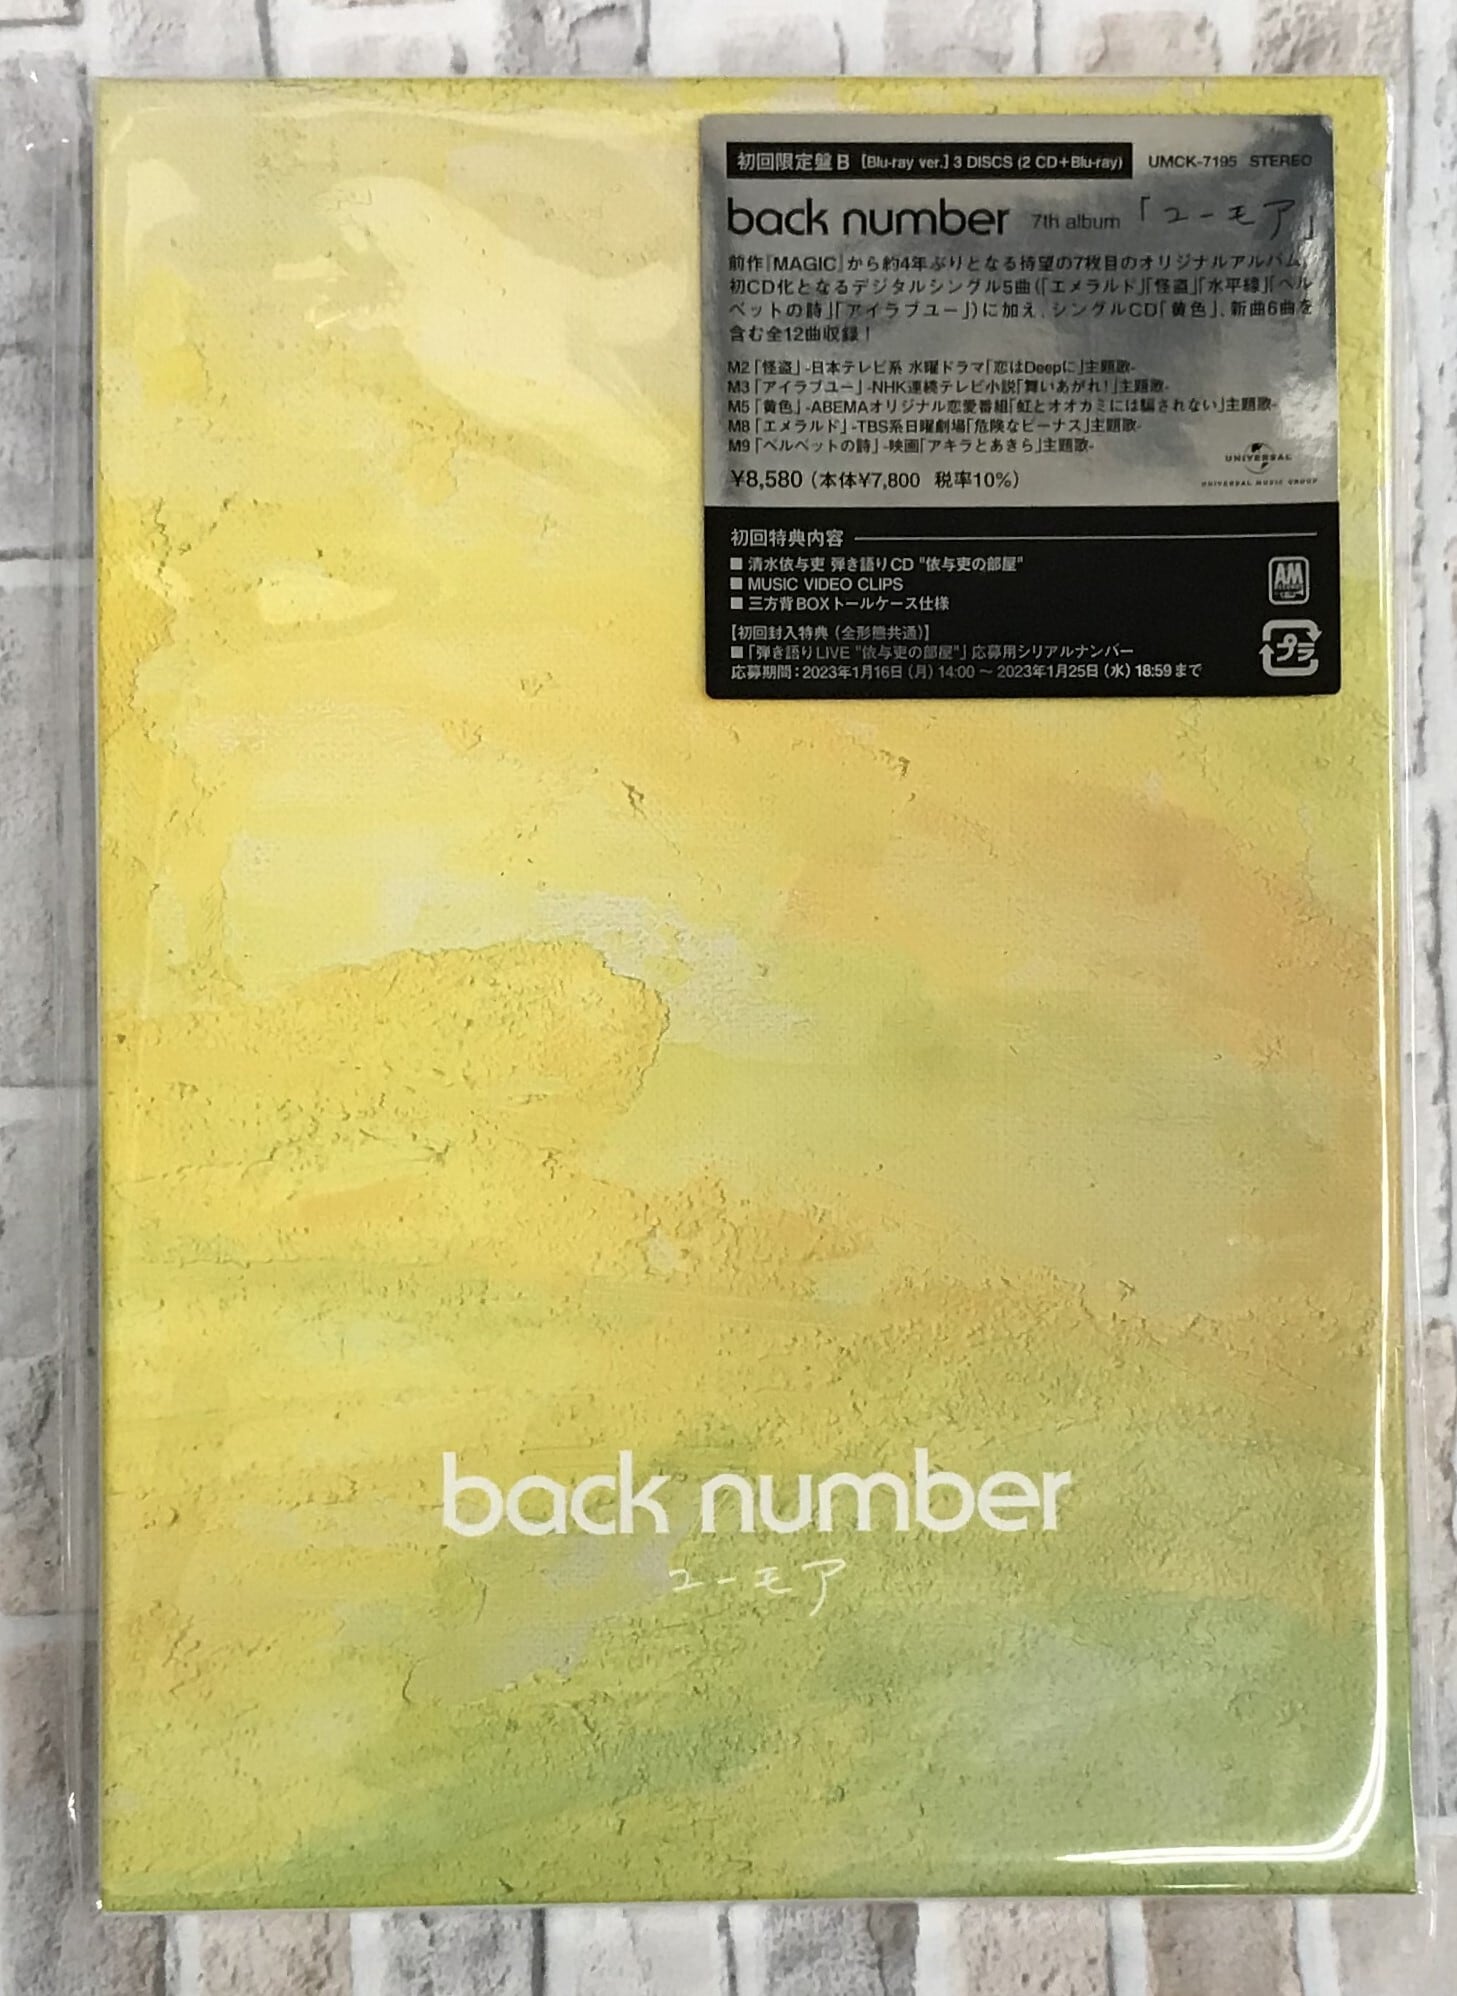 ポップス/ロック(邦楽)back number ユーモア 初回限定盤B DVD ver.